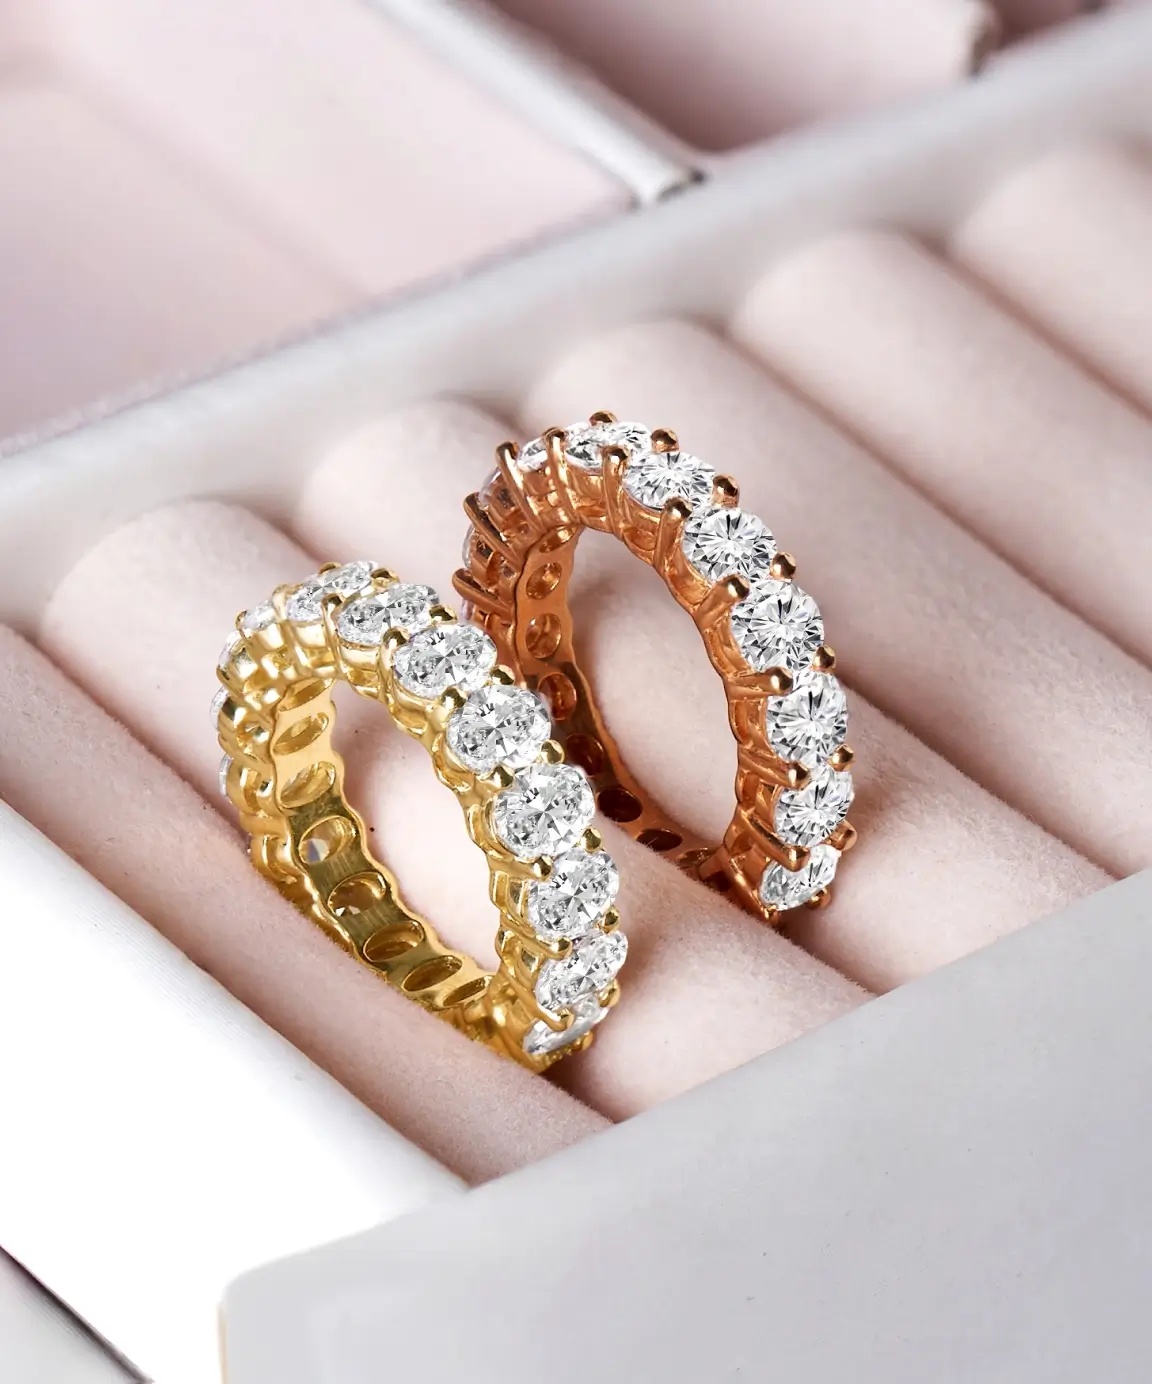 Joyalukkas 18k purity rose gold women ring : Amazon.in: Fashion